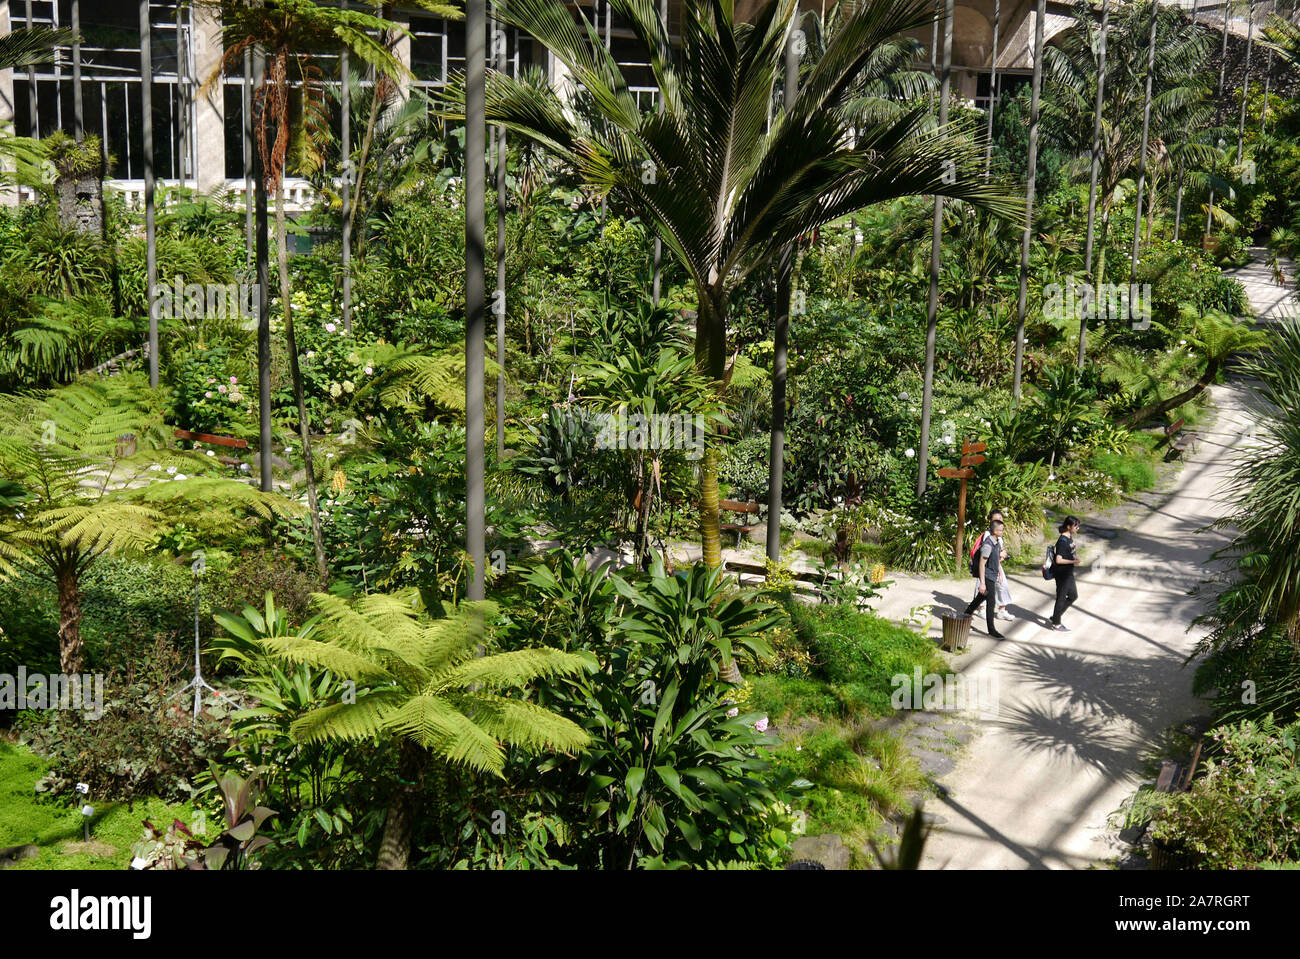 Portugal, Lisbonne : "Estufa Fria" serre tropicale et ses trois jardins botaniques de plantes, cactus et d'arbres exotiques, situé dans le Eduardo VII p Banque D'Images